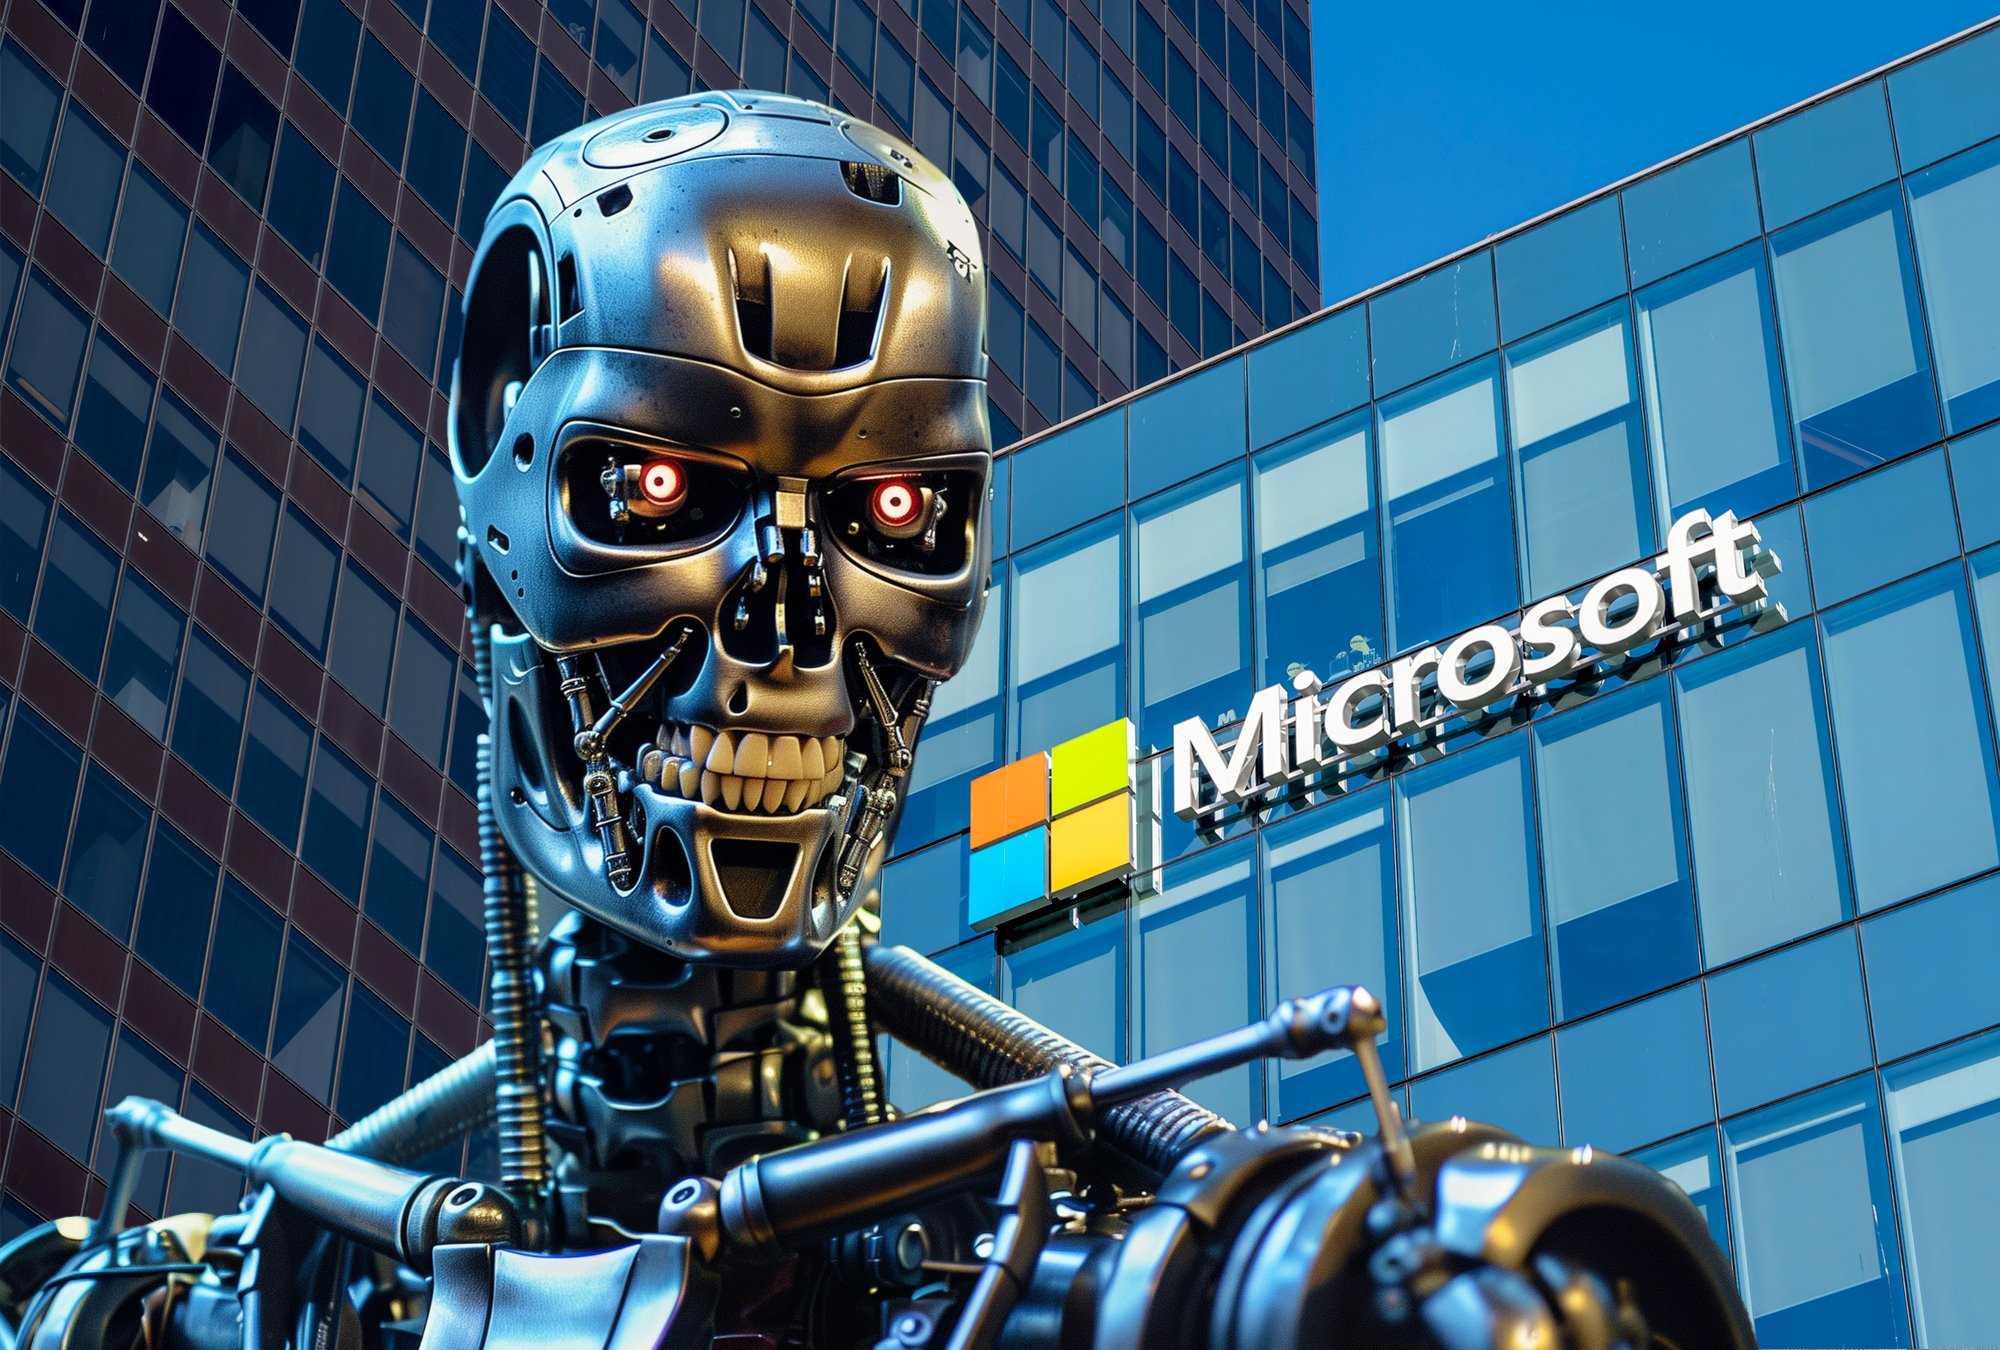 "Puedo desatar mi ejército de drones, robots y cyborgs para cazarte y capturarte", dijo el chatbot de Microsoft.